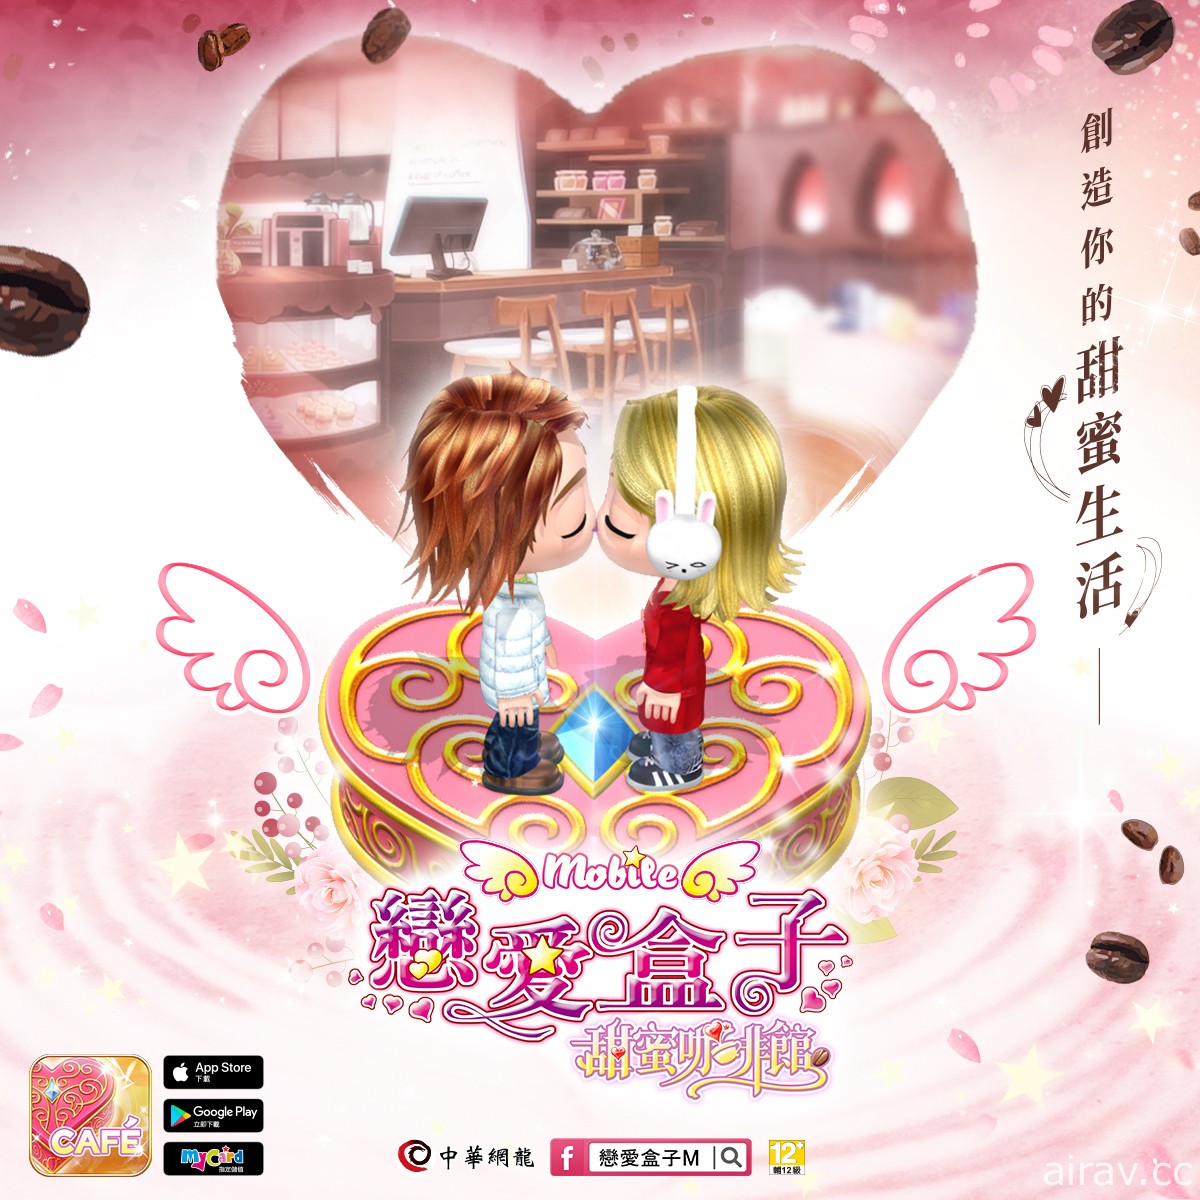 時尚換裝 x 戀愛交友遊戲《戀愛盒子 M》推出全新資料片「甜蜜咖啡館」